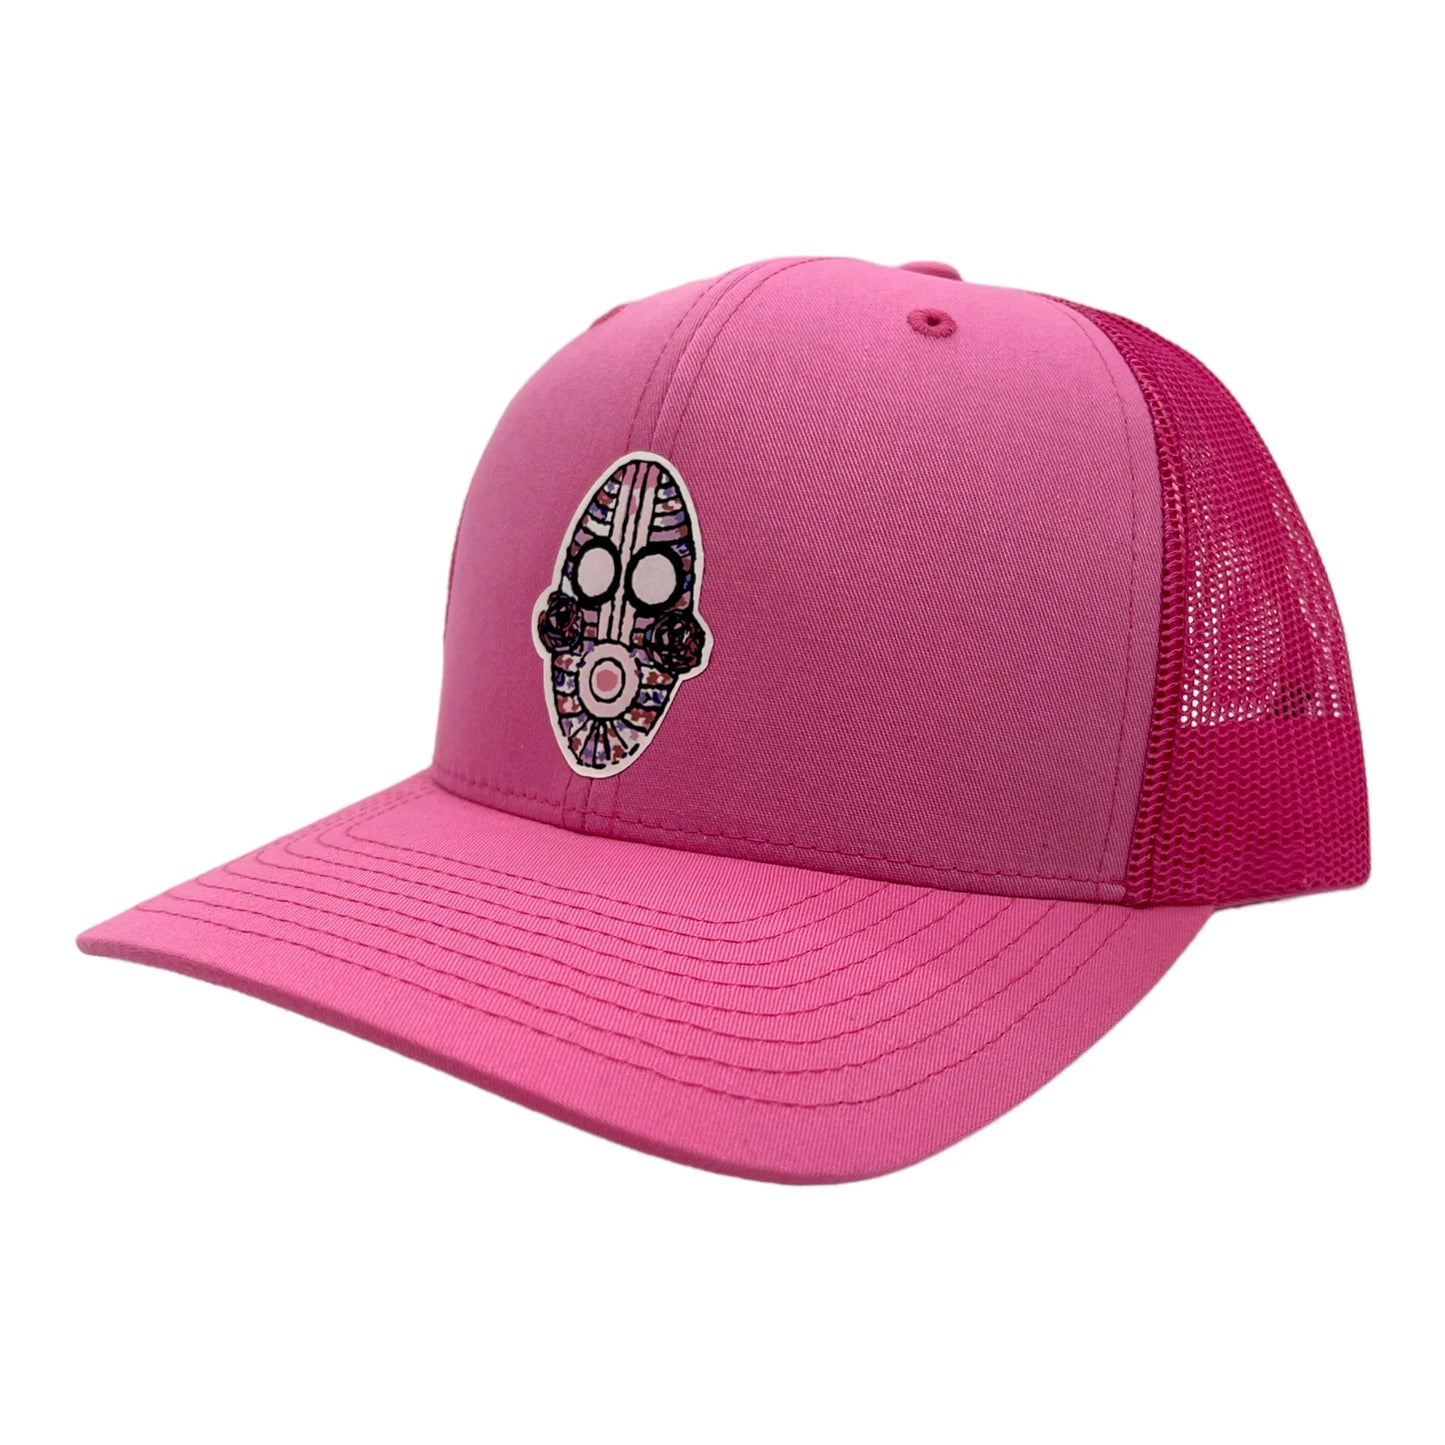 Neu Trucker Hat - Pink